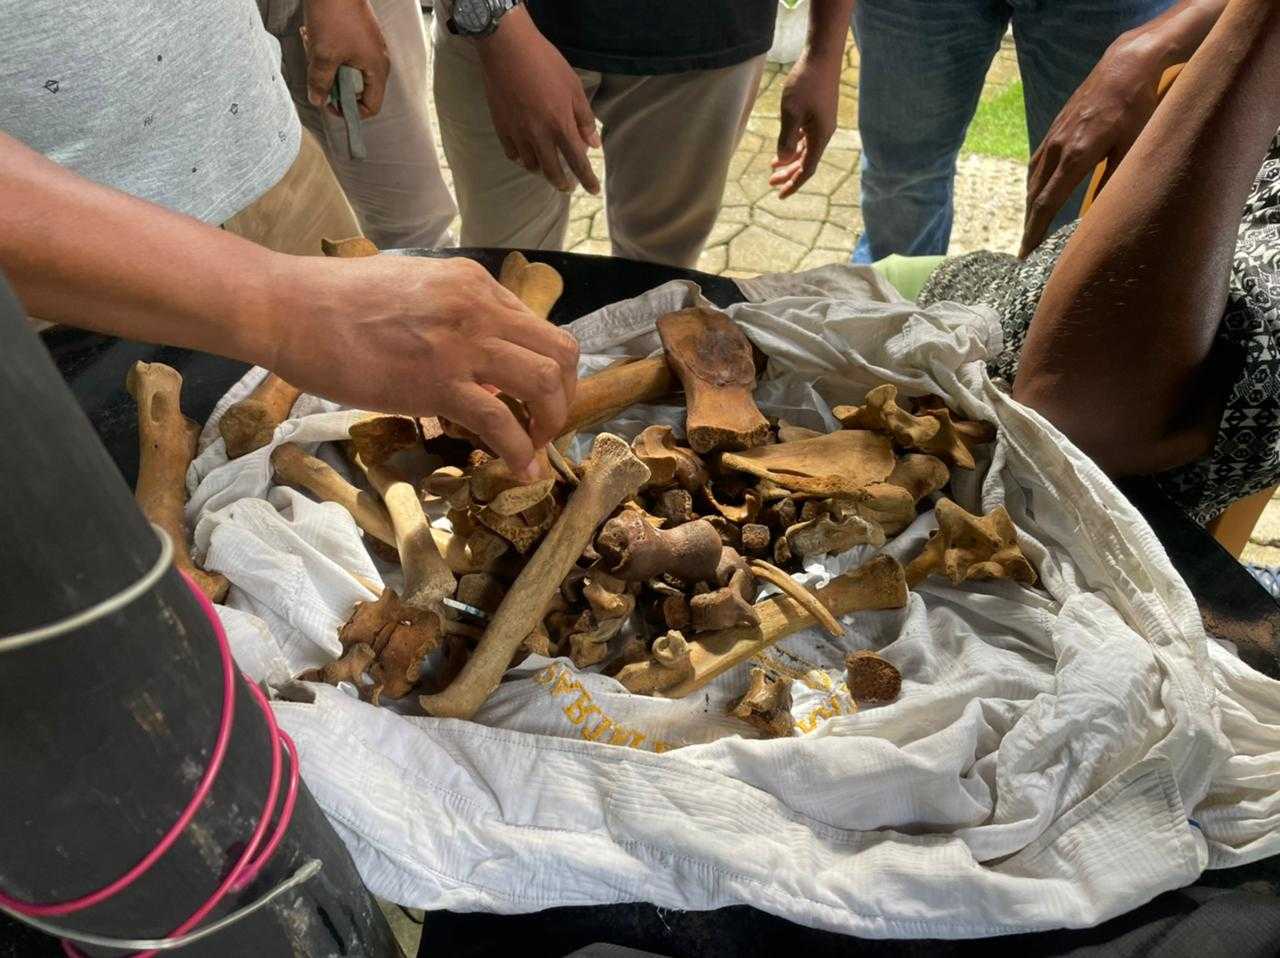 Penjual Tulang Harimau Ditangkap, BKSDA Sumbar Selidiki Asal Satwa